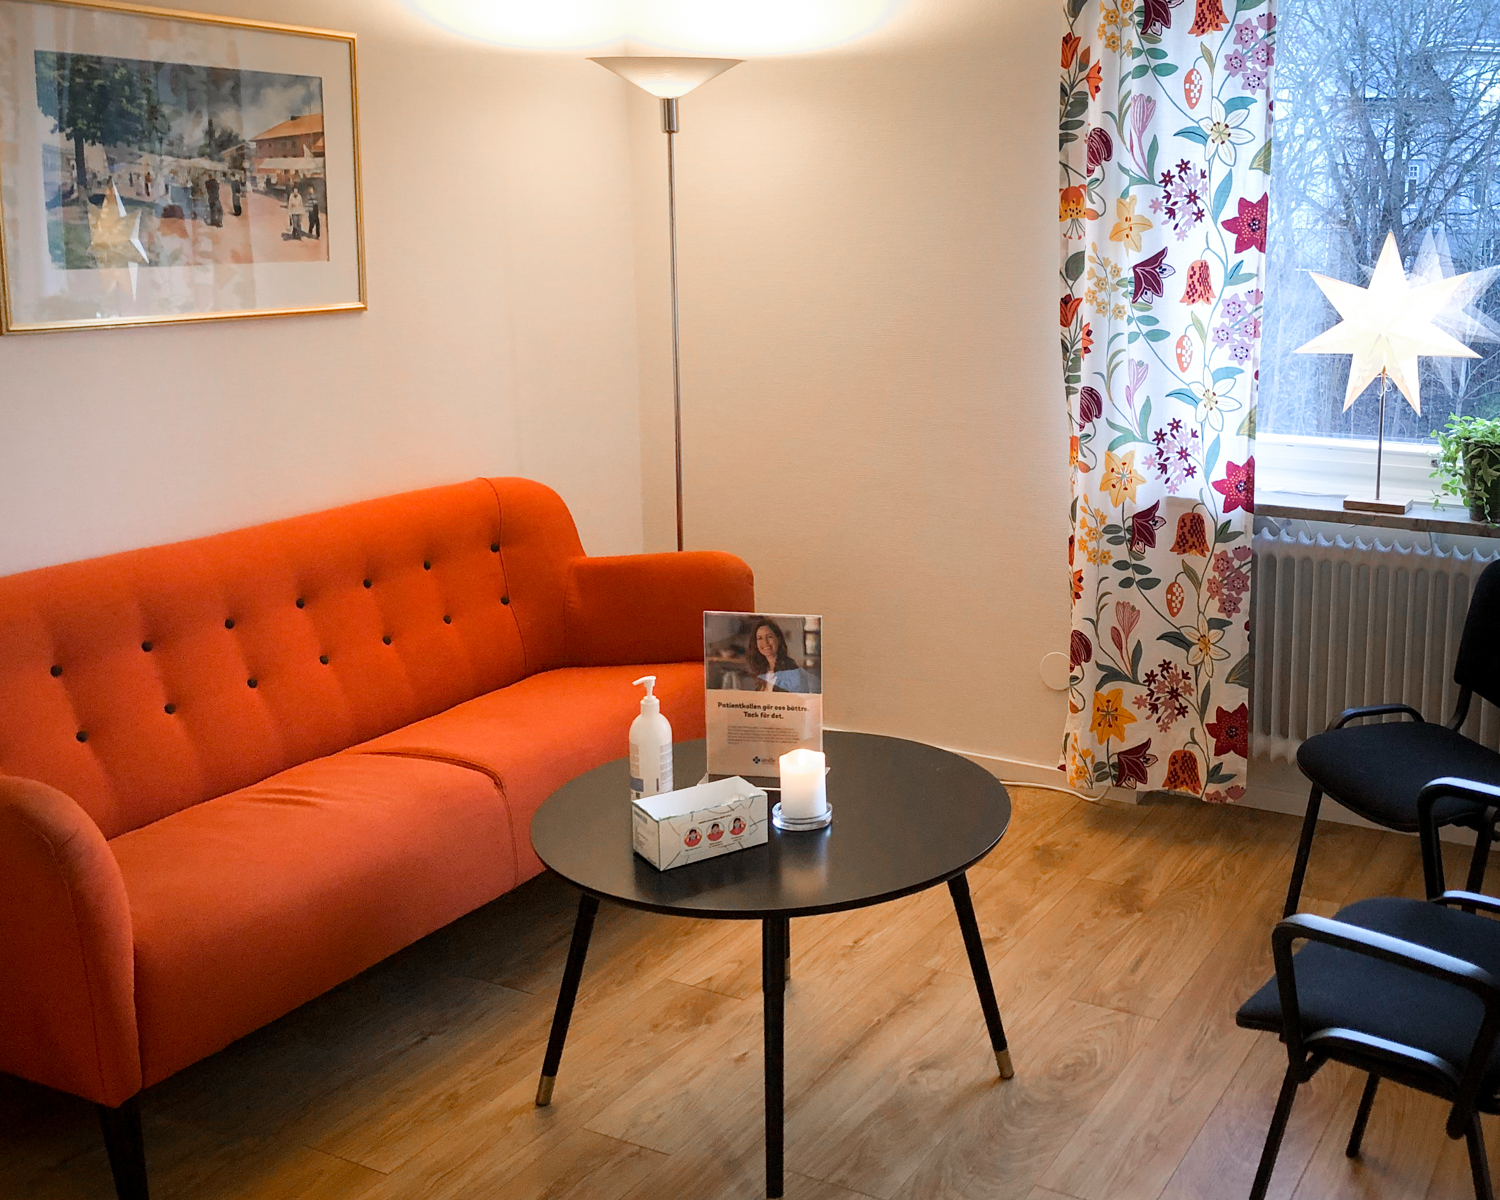 En välkomnande väntrumsmiljö hos Smile Tandvård i Molkom med en orange soffa, ett runt kaffebord med en informationsbroschyr och två handdesinfektionsflaskor, mot en vägg med ett livfullt blommönster och en intillstående svart stol.